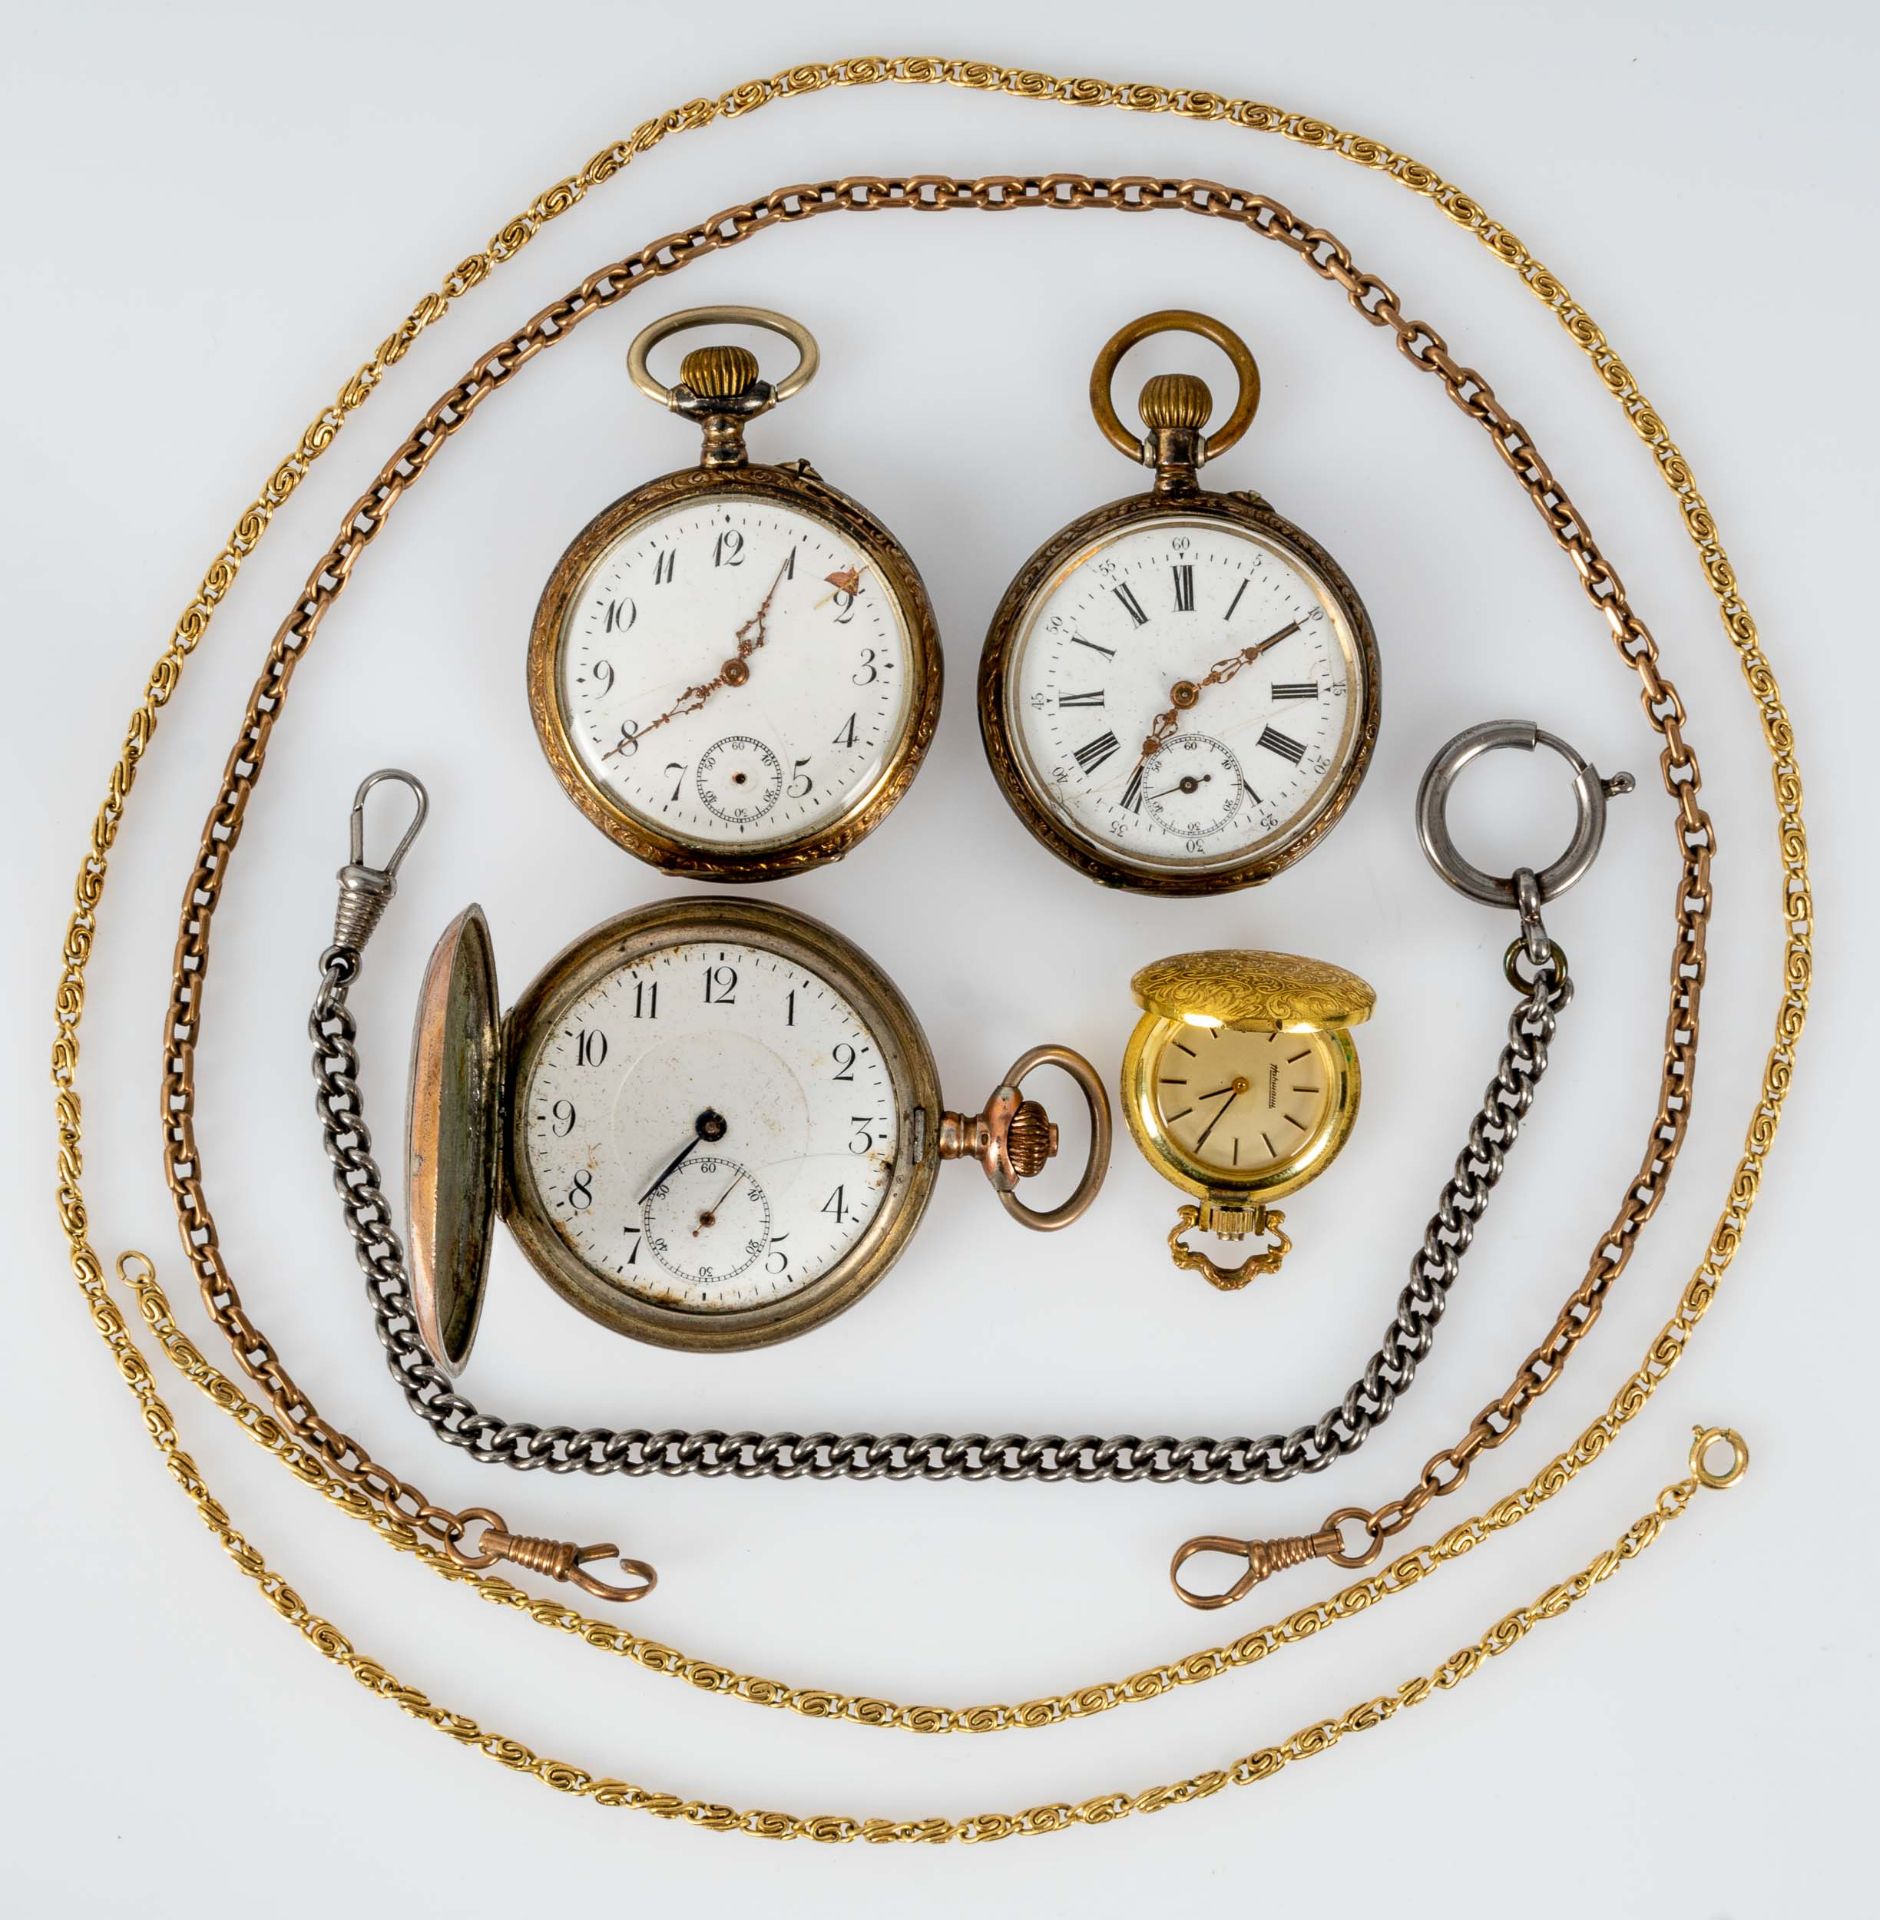 7teiliges Konvolut versch. Taschenuhren, bestehend aus 3 silbernen Taschenuhren, 1 vergoldete Schmu